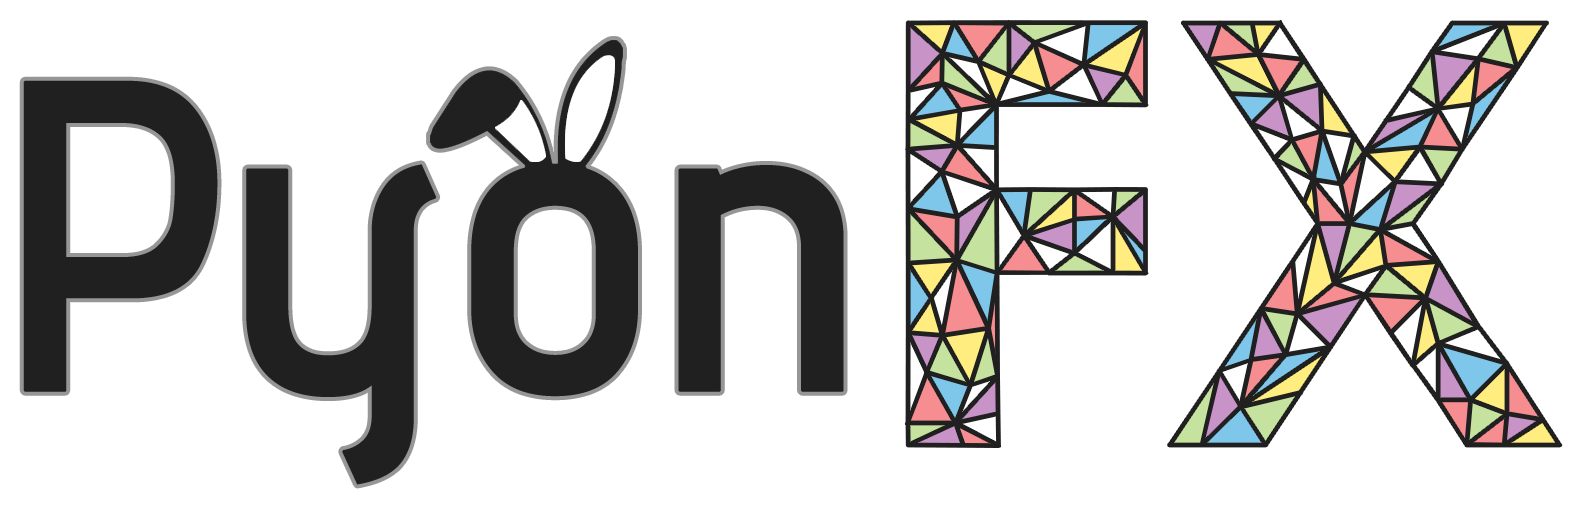 PyonFX Logo